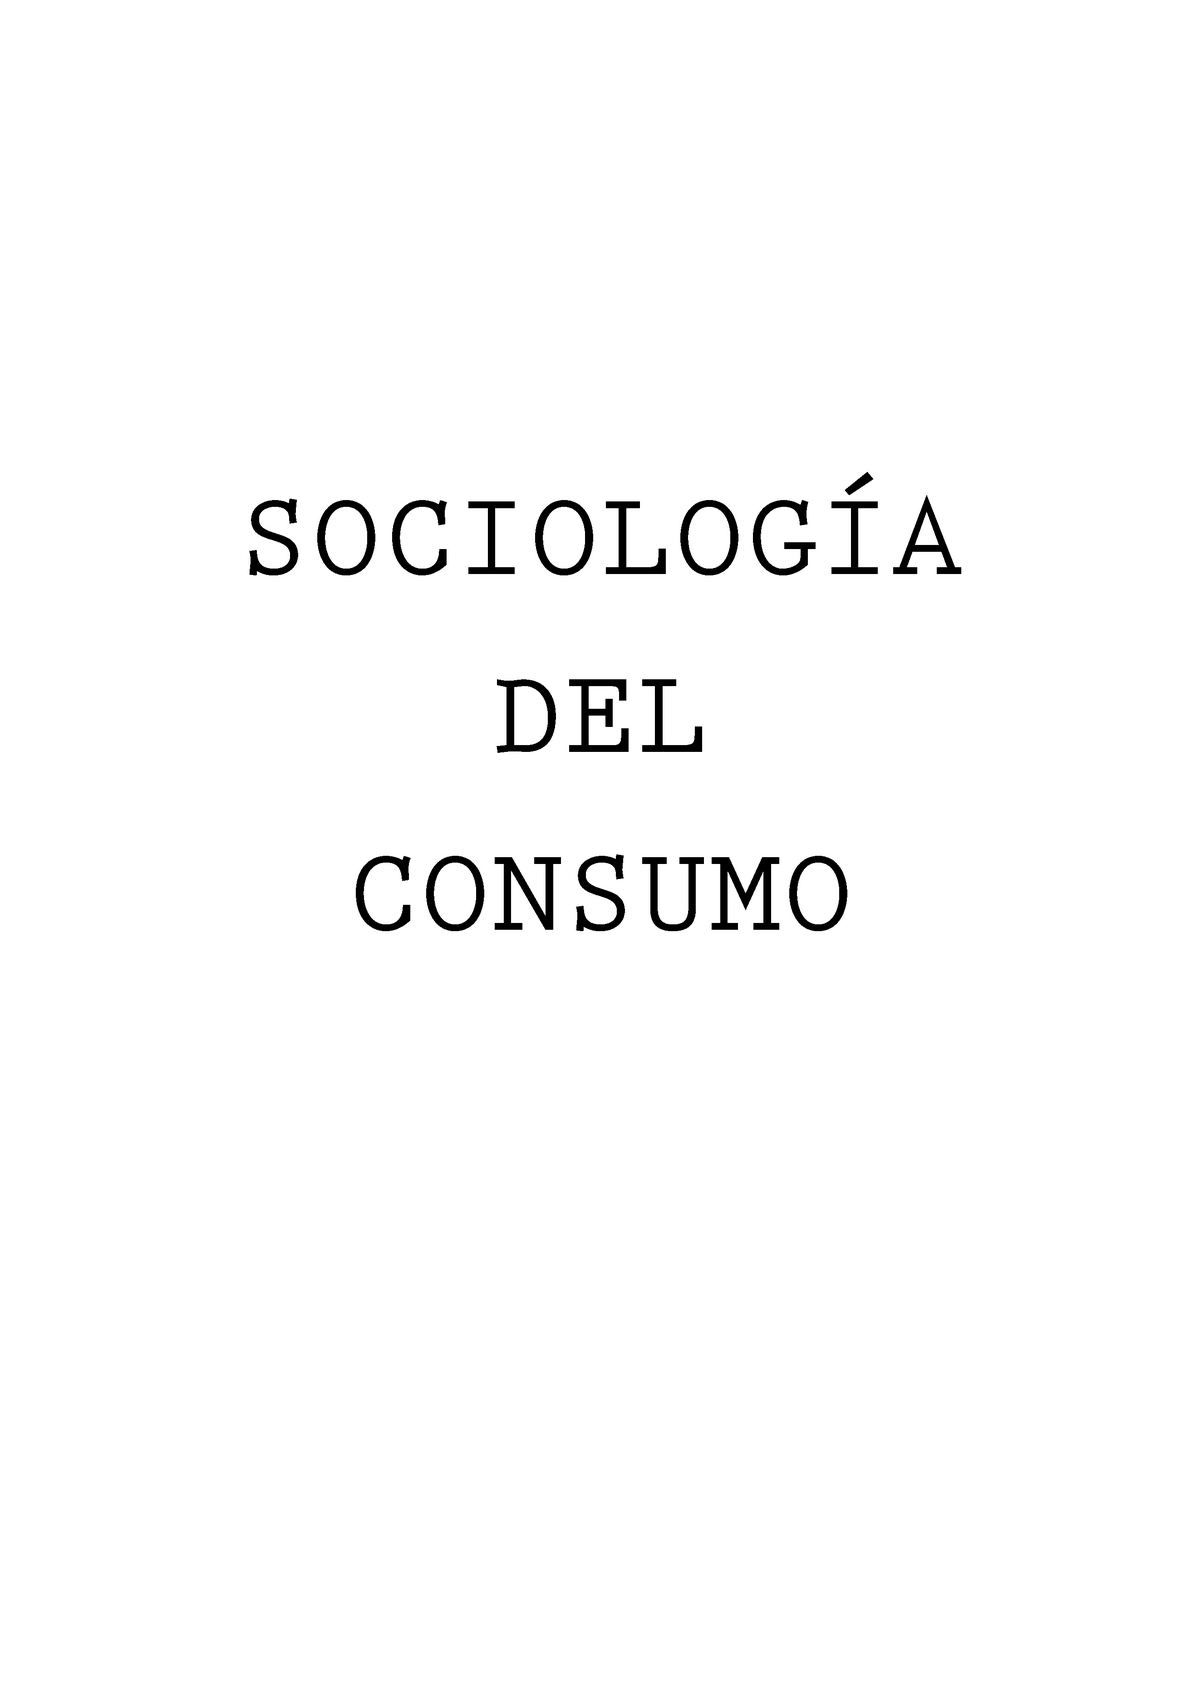 Temas 1 4 Sociología Del Consumo Del Consumo Tema 1 El Consumo En Las Sociedades 6391